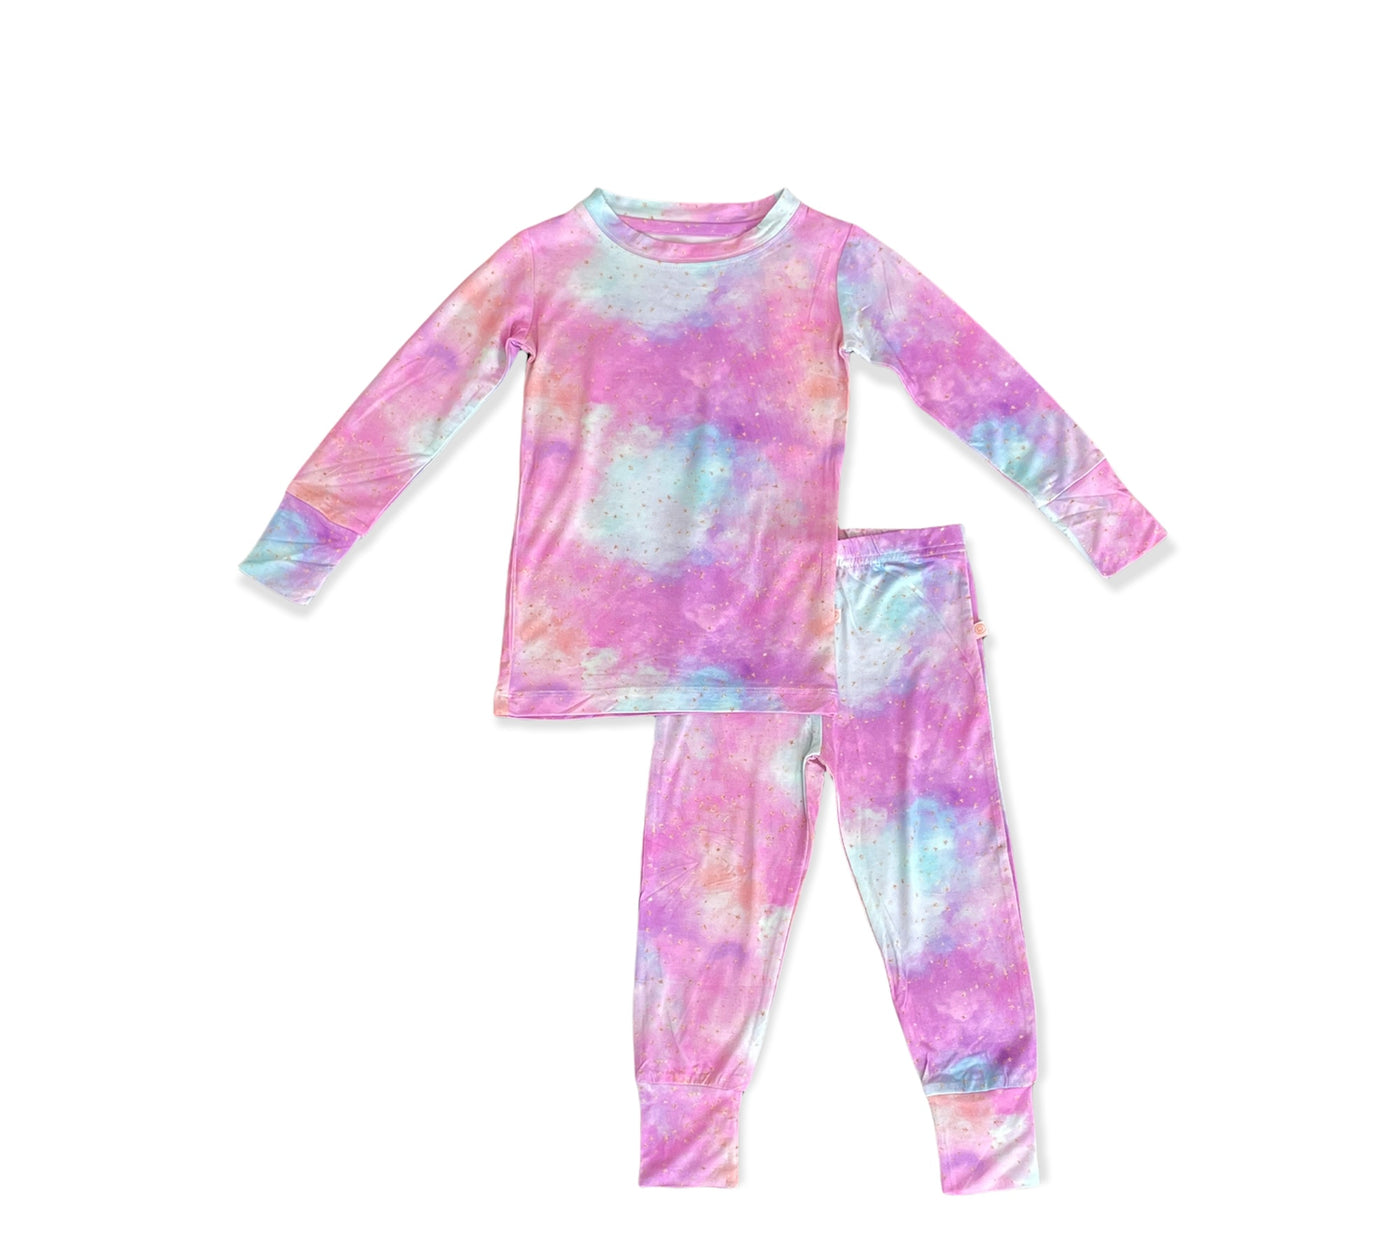 Estrella’s Two piece Long Sleeves Pajama